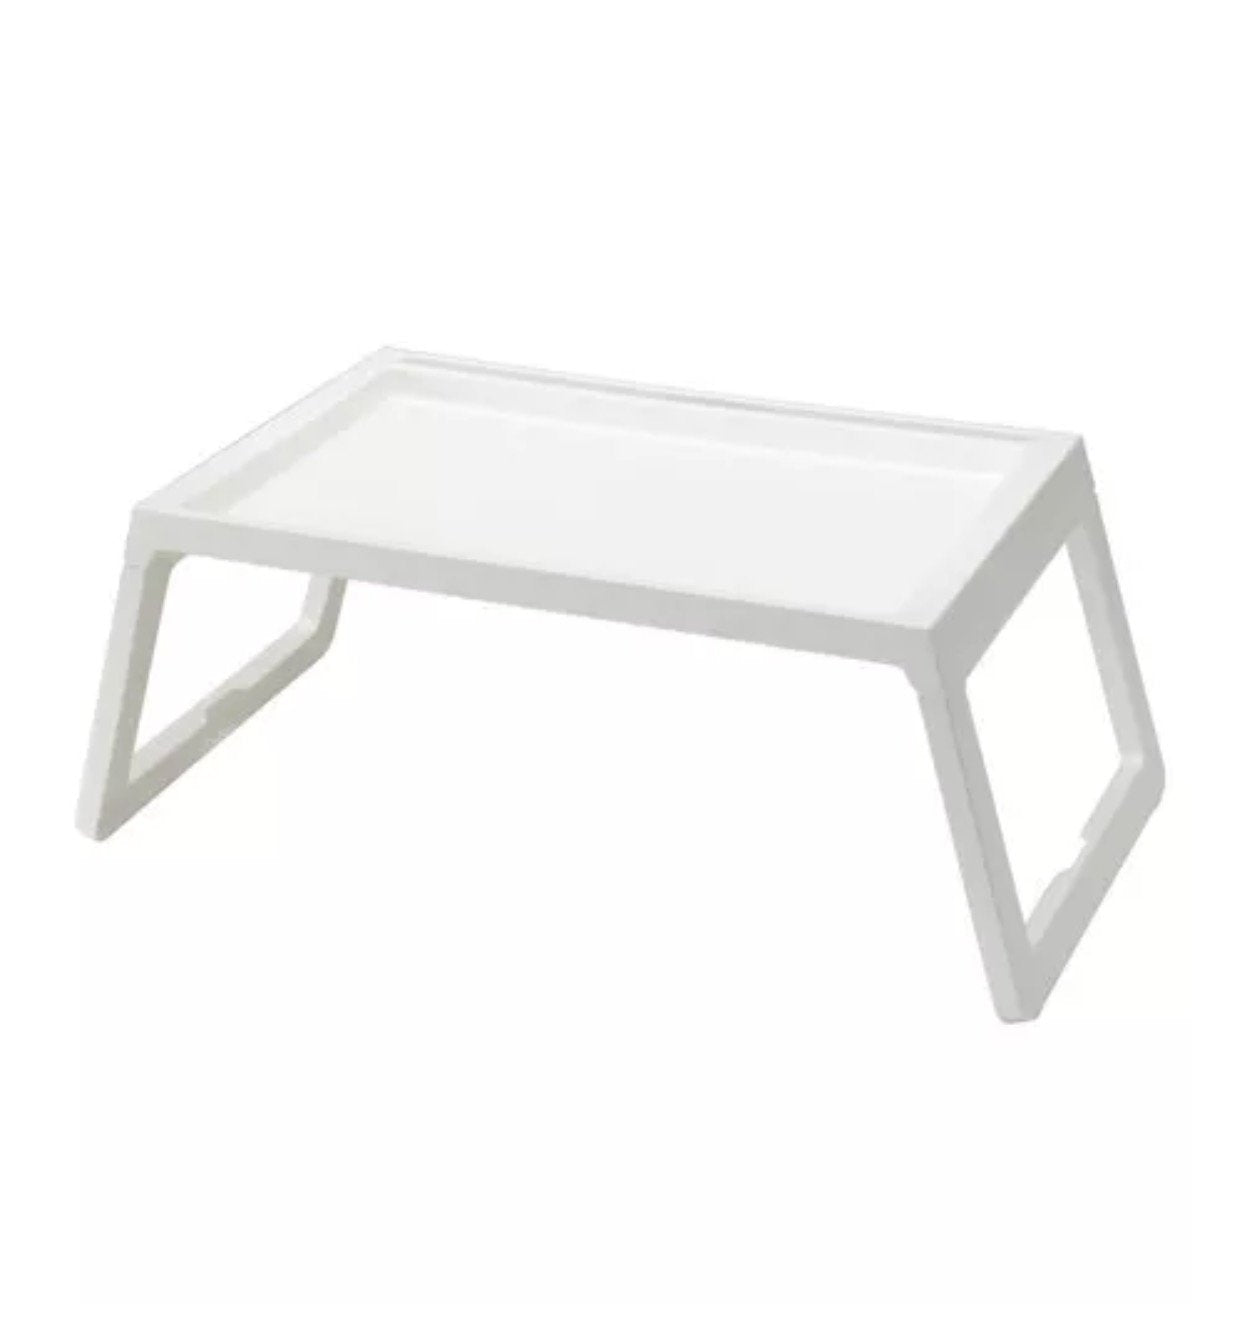 Ikea Klipsk Foldable Bed Tray, white - Mega Shopper Worldwide